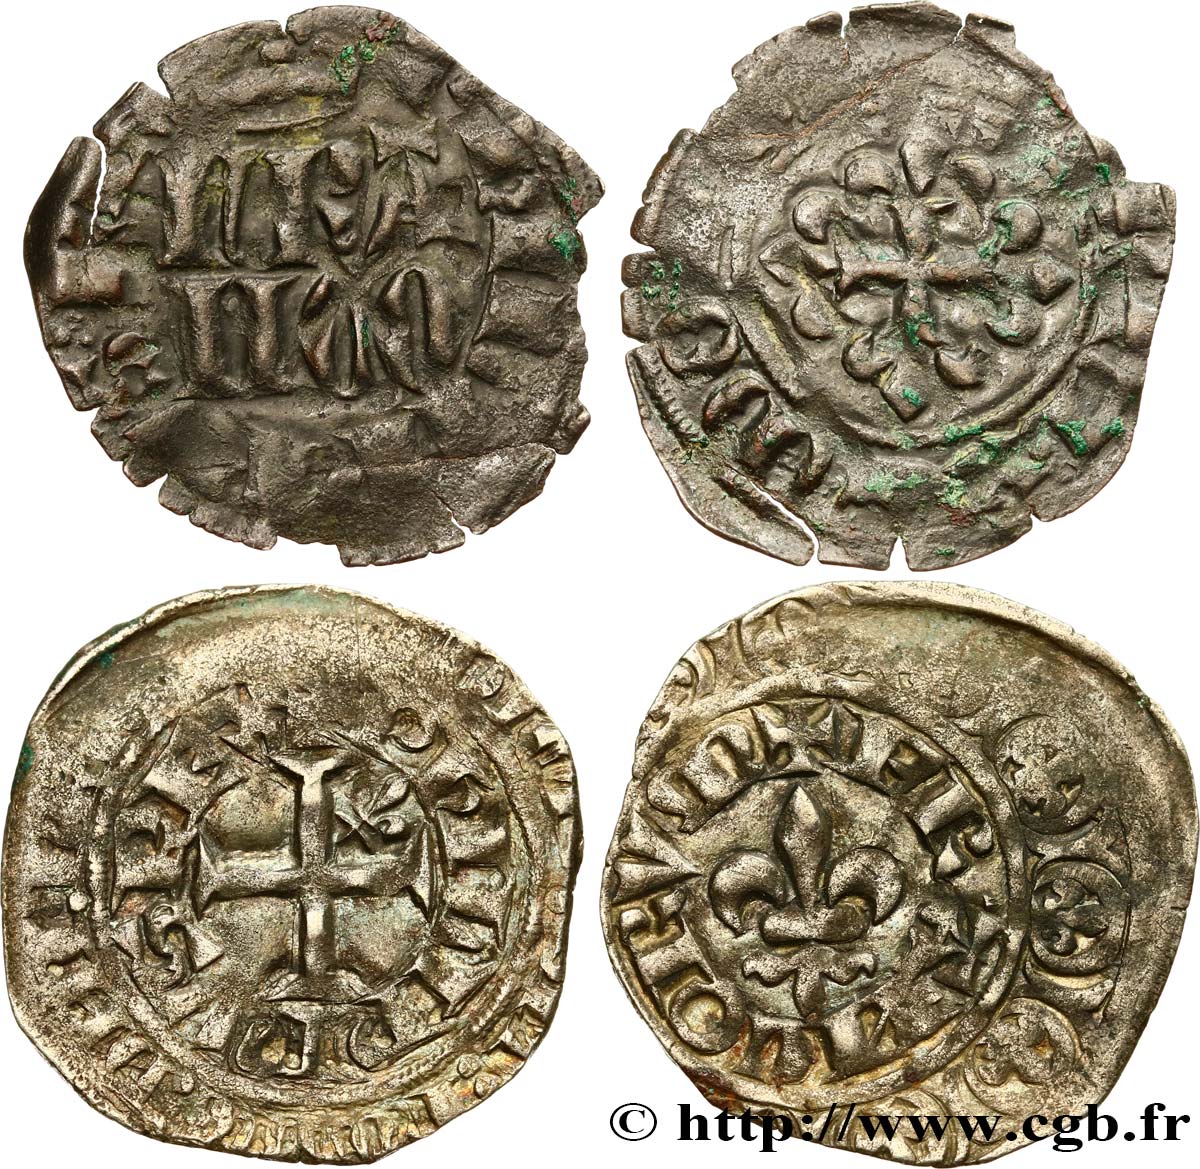 FILIPPO VI OF VALOIS Lot de 2 monnaies royales n.d. Ateliers divers q.BB